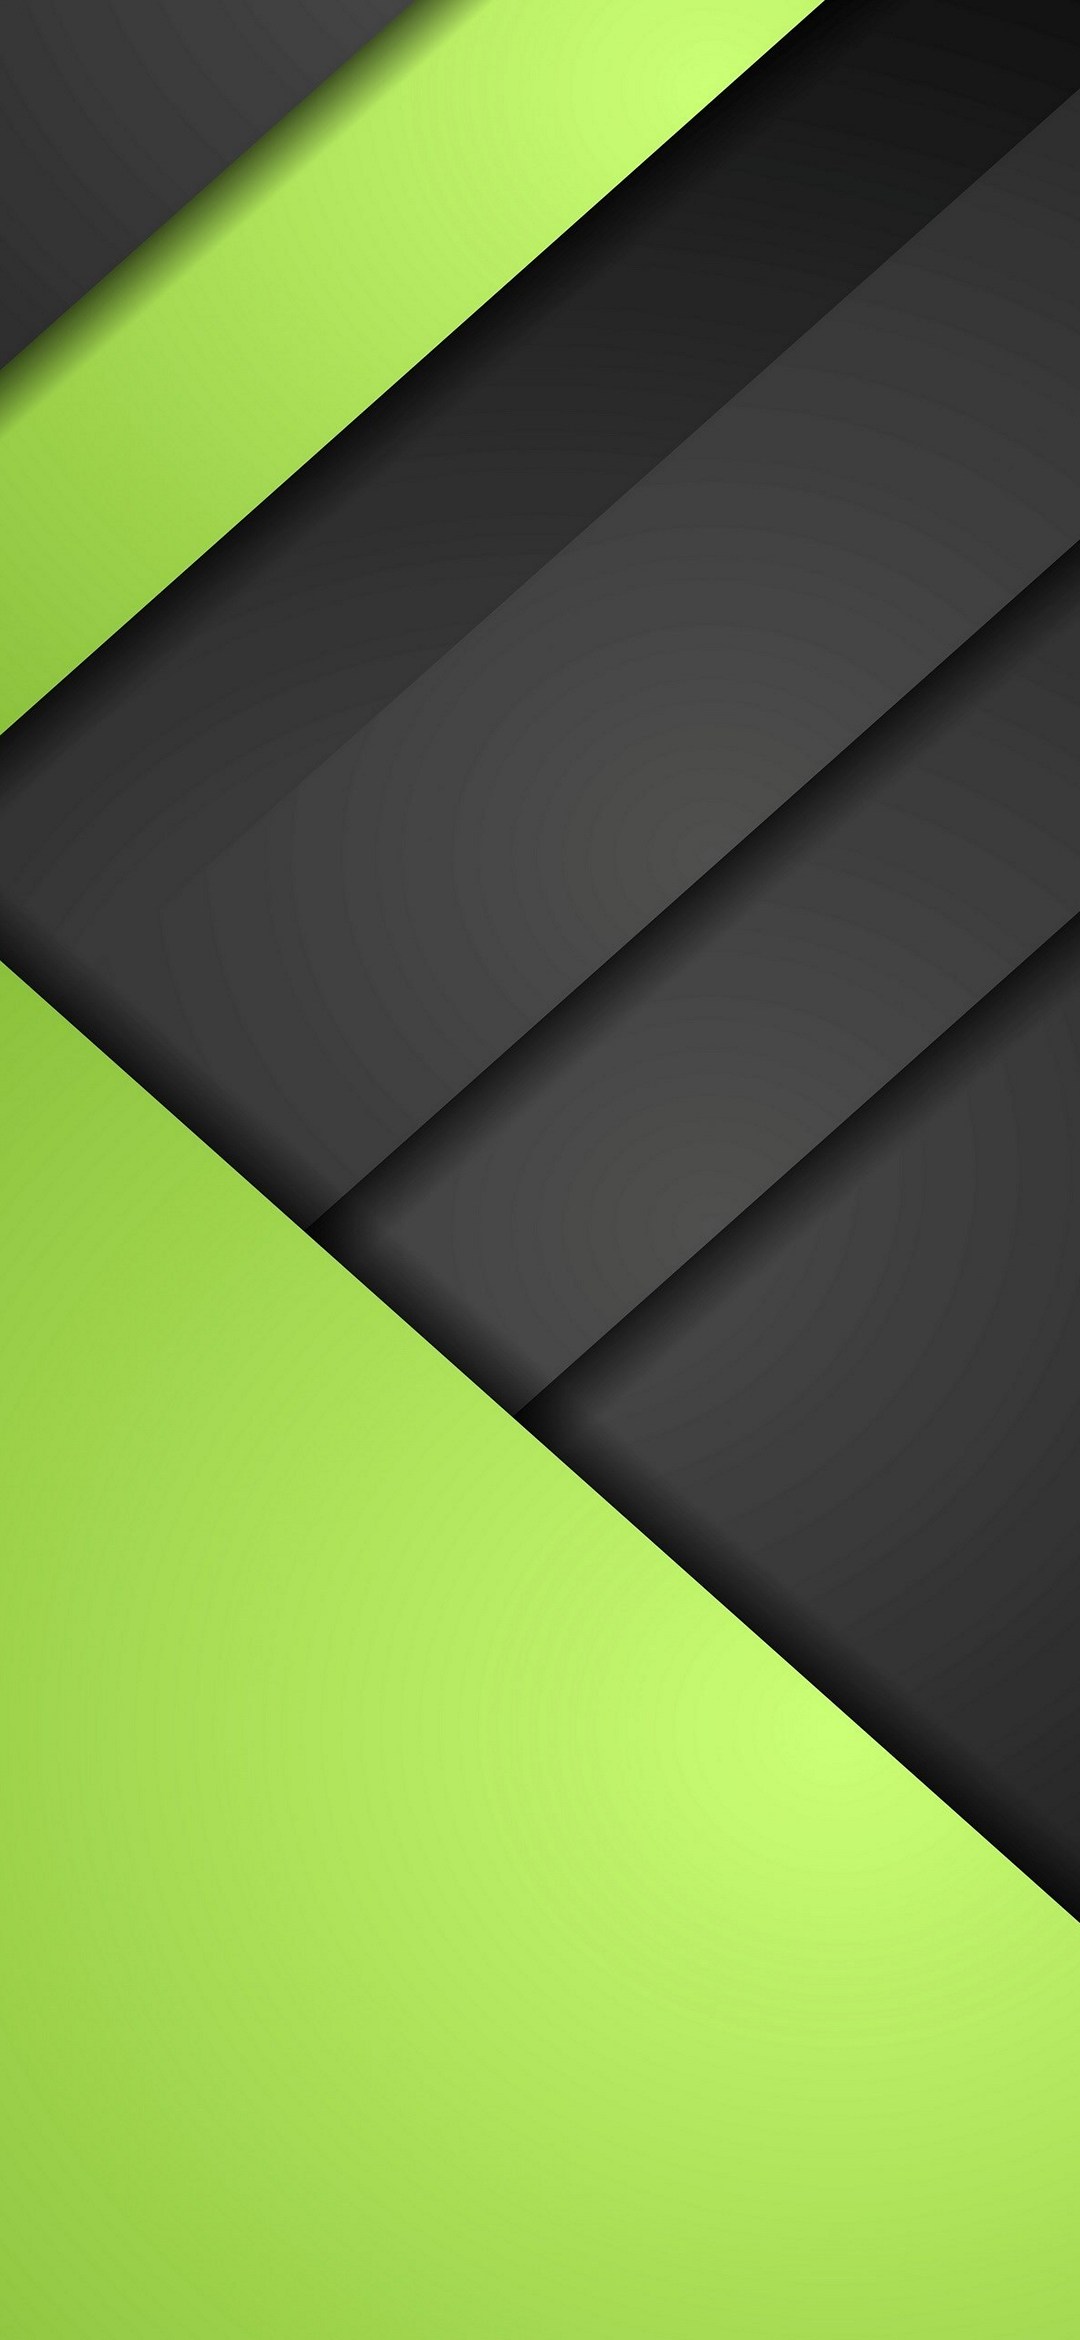 影 緑と黒の段差 マットな質感 Google Pixel 5 Android 壁紙 待ち受け スマラン